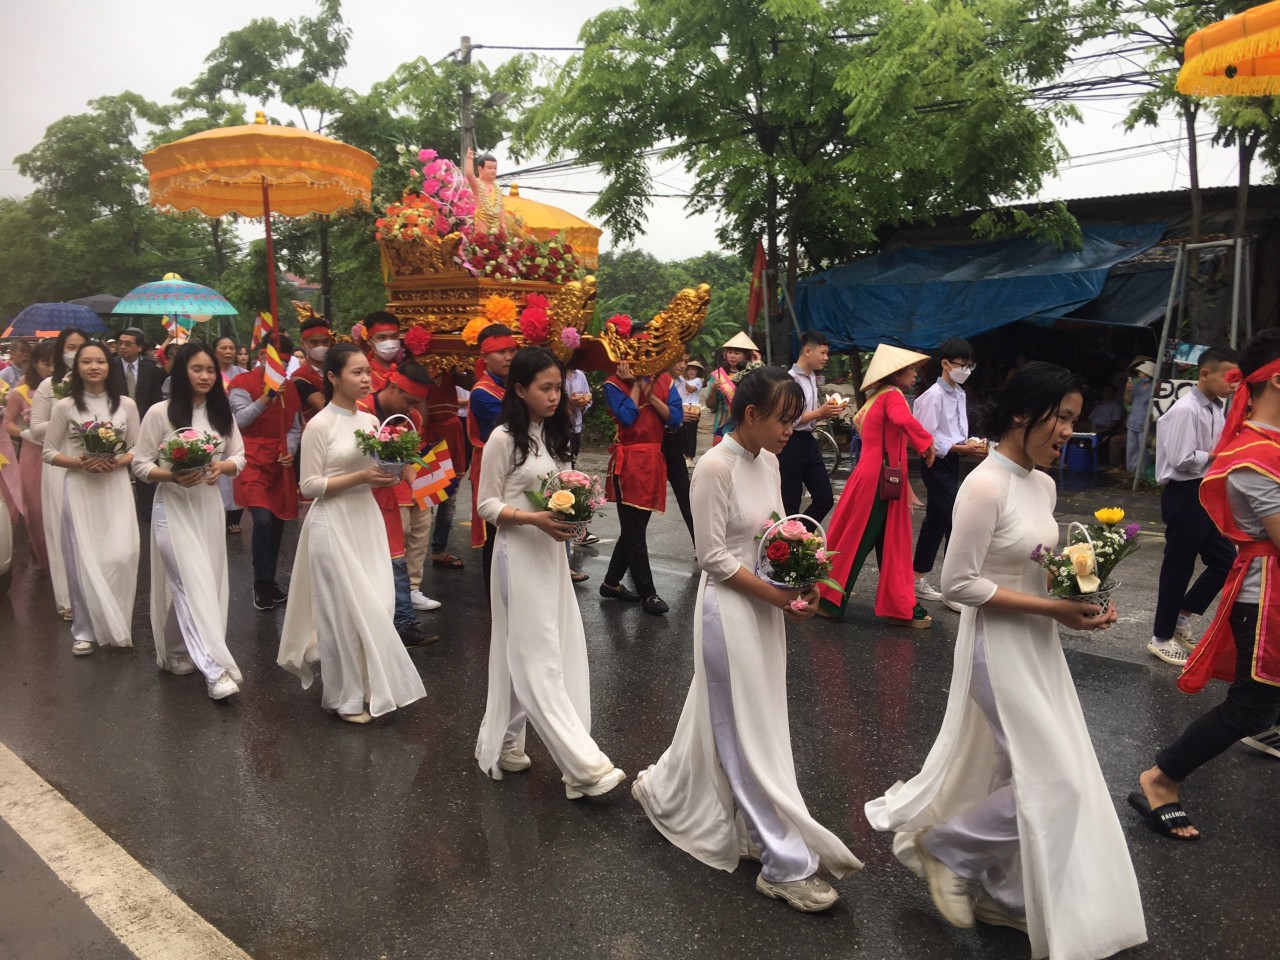 Hội liên lạc với người Việt Nam ở nước ngoài tham dự Đại lễ Phật đản tại chùa Khê Nữ